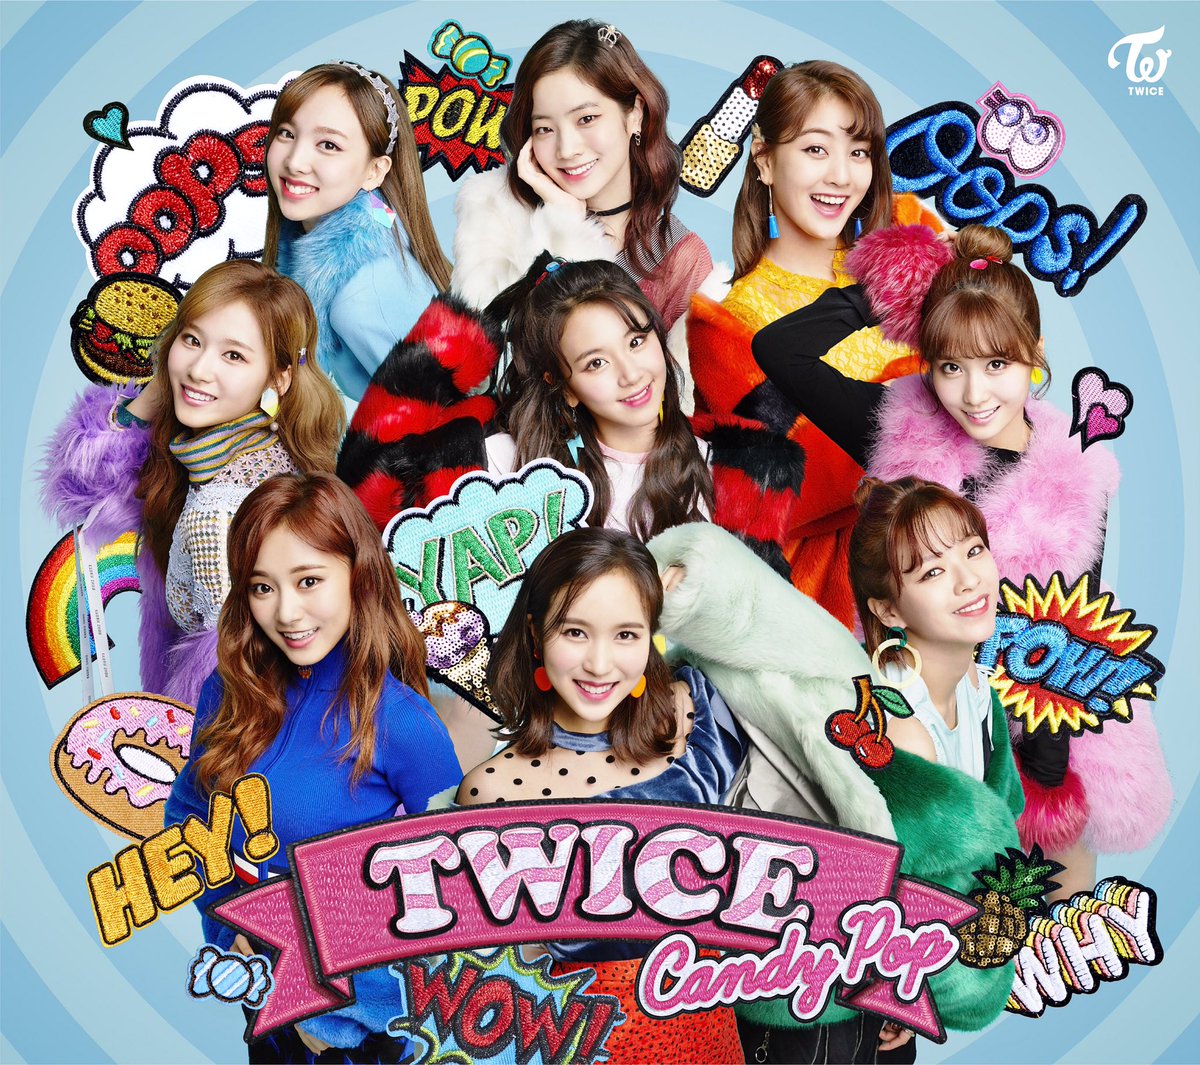 Candy Pop | Twice Wiki | Fandom